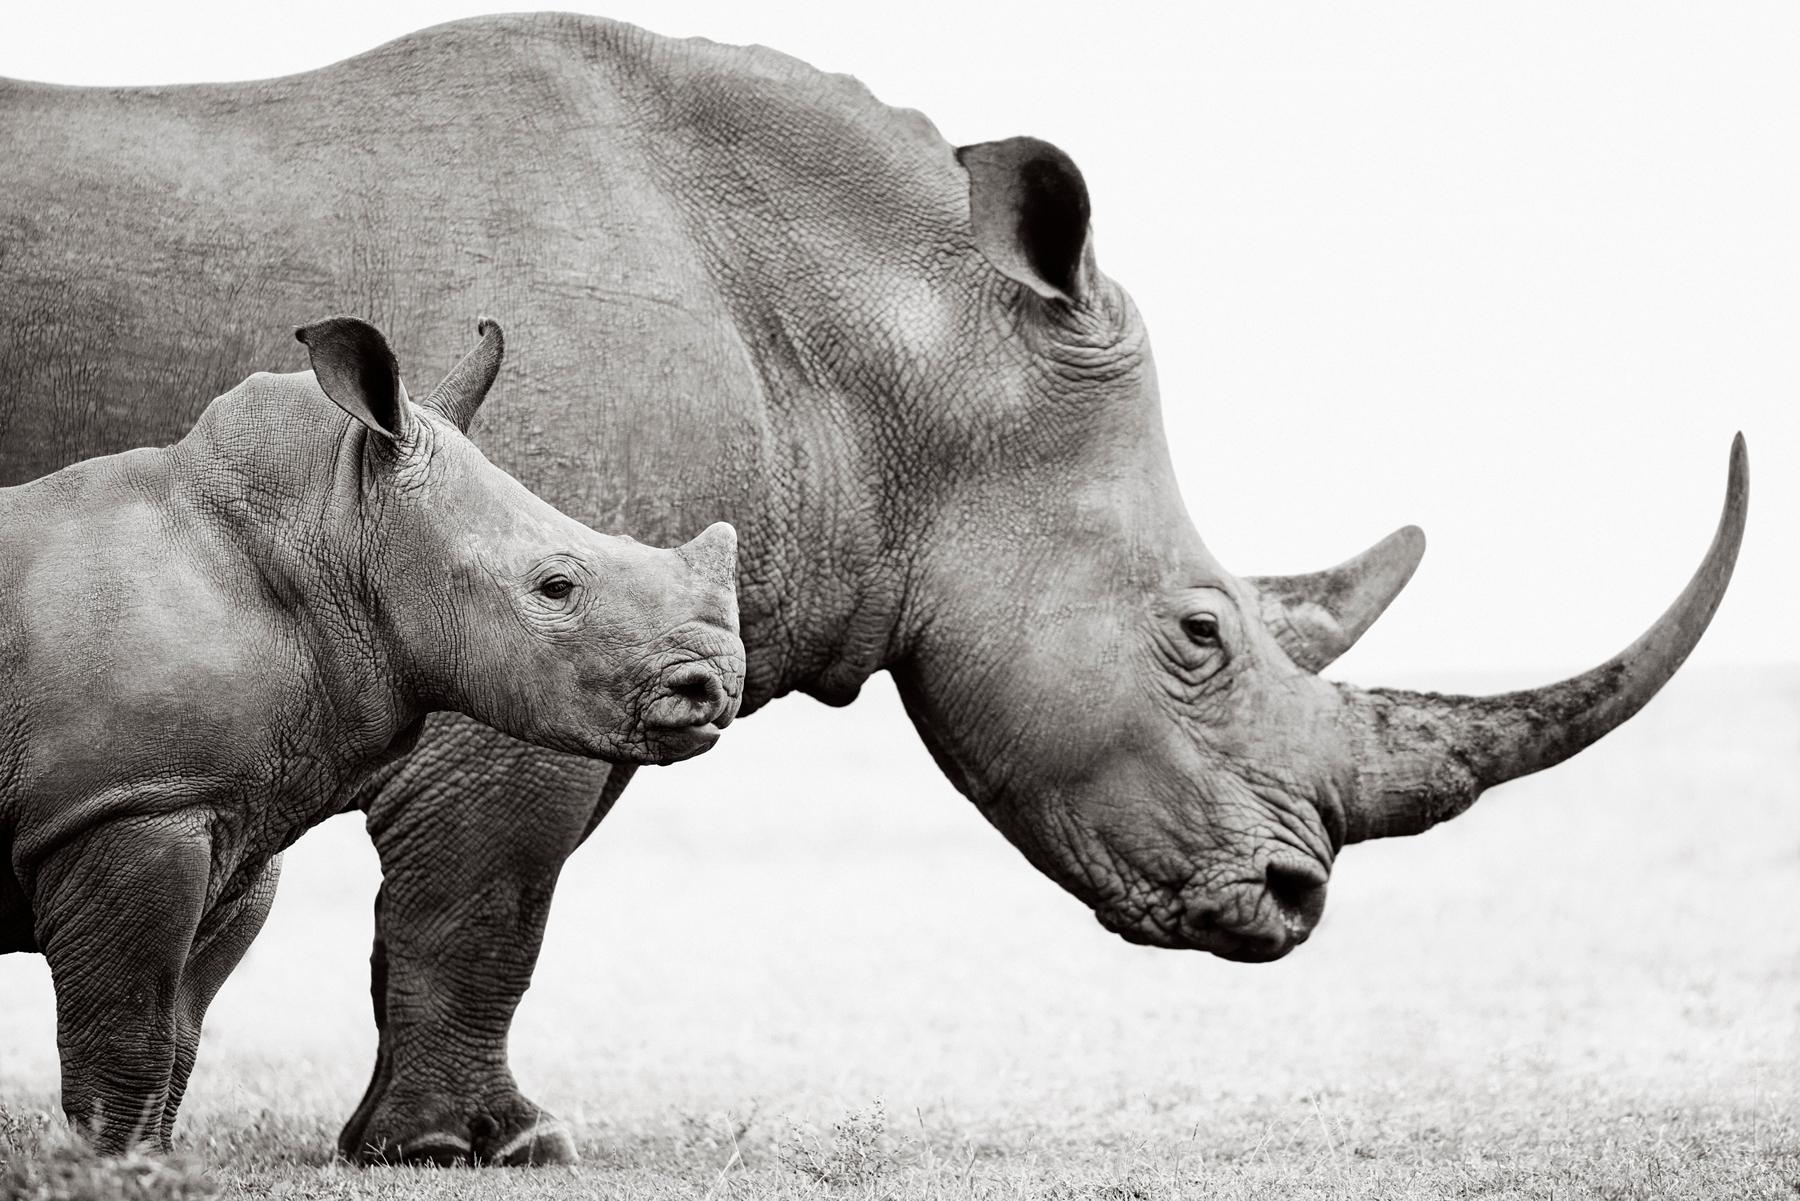 Black and White Photograph Drew Doggett - Un jeune rhino se tient à côté de leur mère dans ce magnifique portrait surréaliste